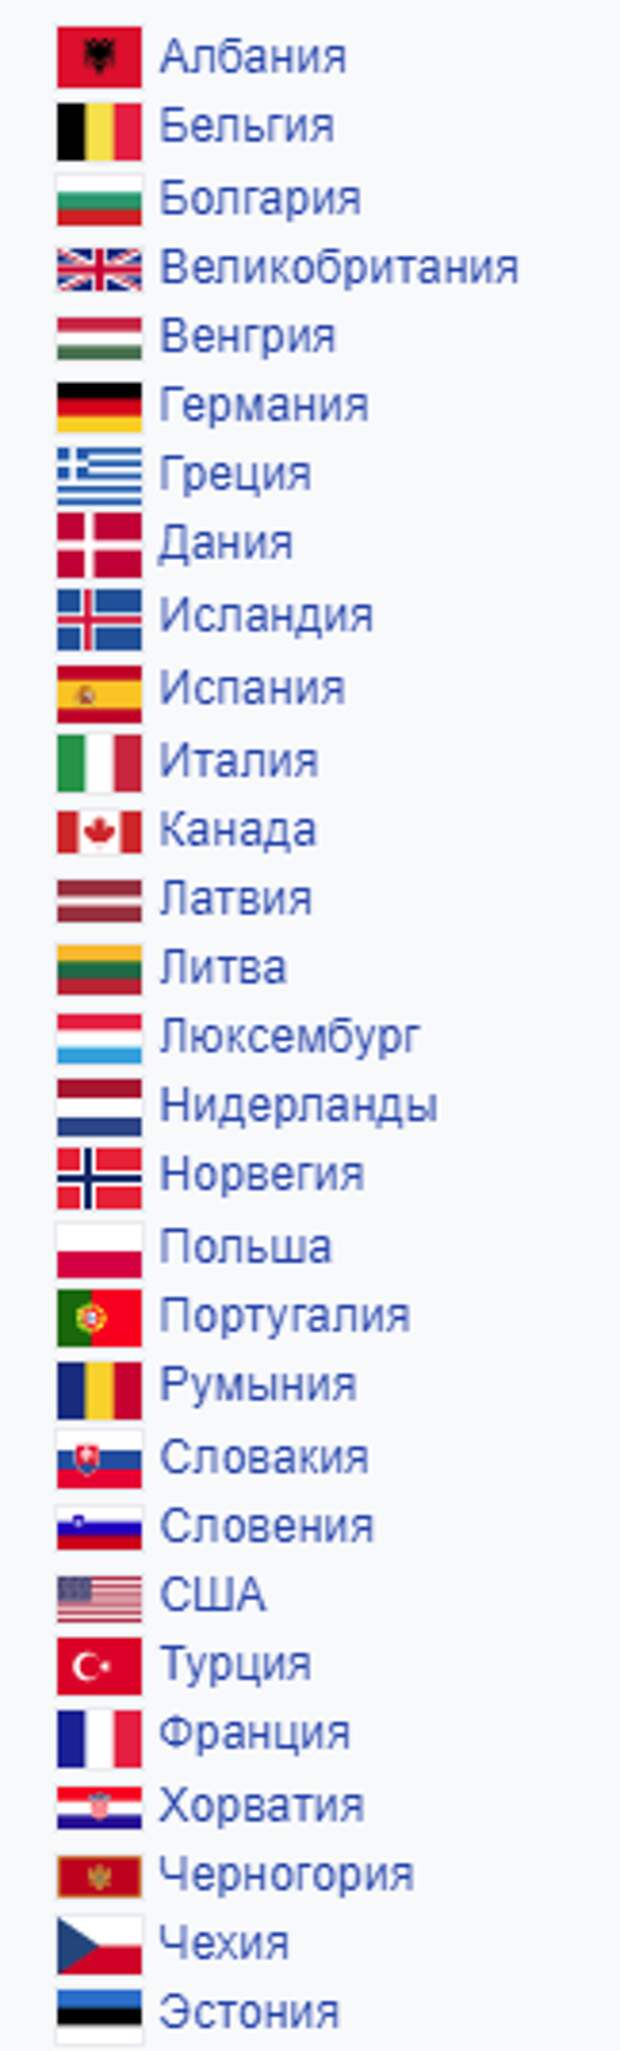 Сколько стран входит в международную